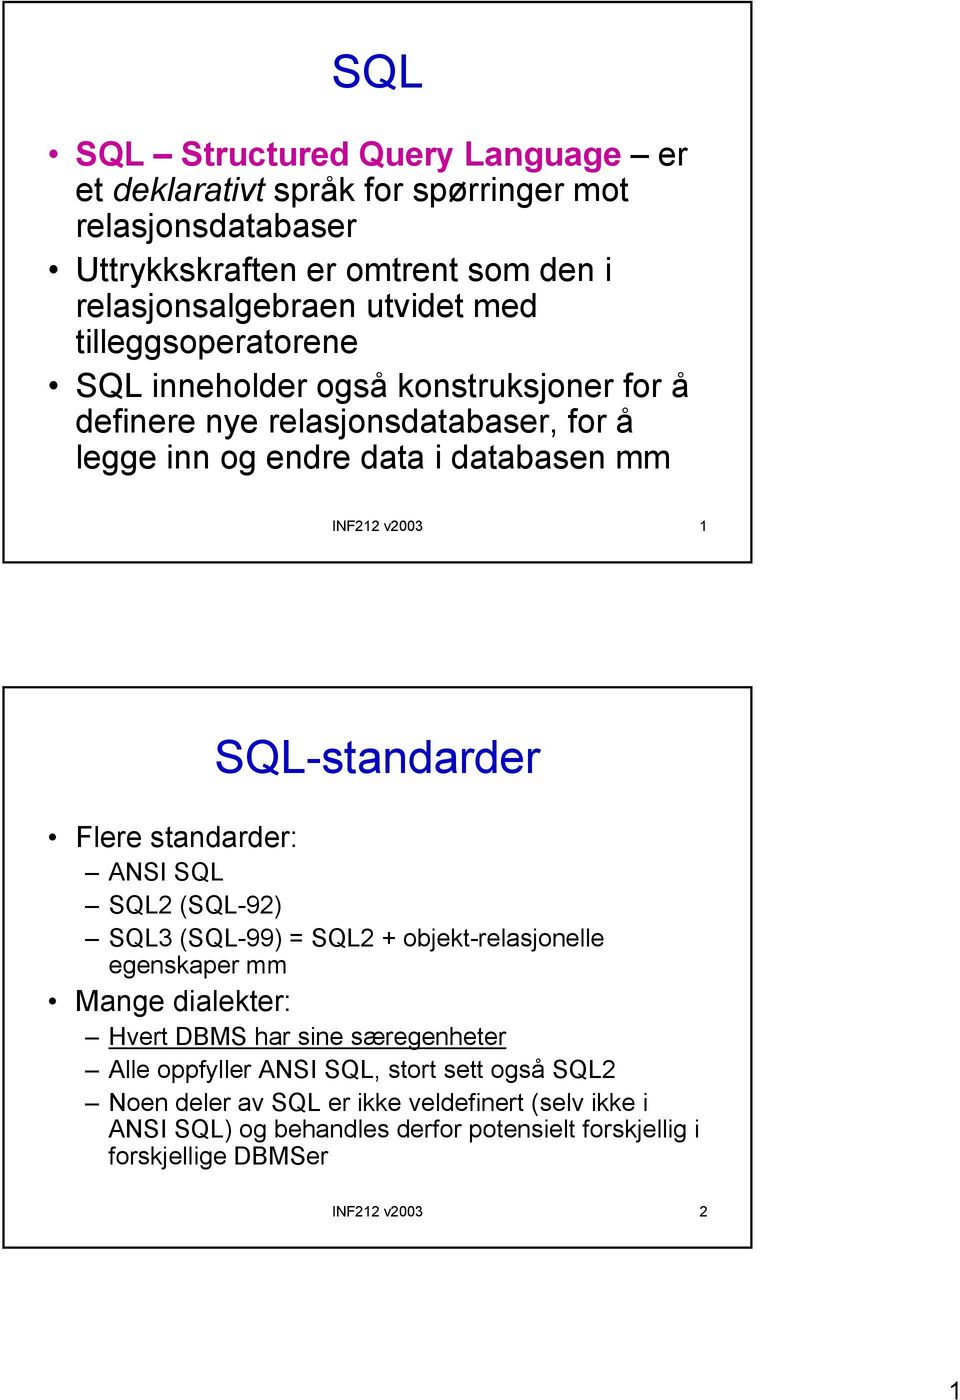 SQL-standarder Flere standarder: ANSI SQL SQL2 (SQL-92) SQL3 (SQL-99) = SQL2 + objekt-relasjonelle egenskaper mm Mange dialekter: Hvert DBMS har sine særegenheter Alle